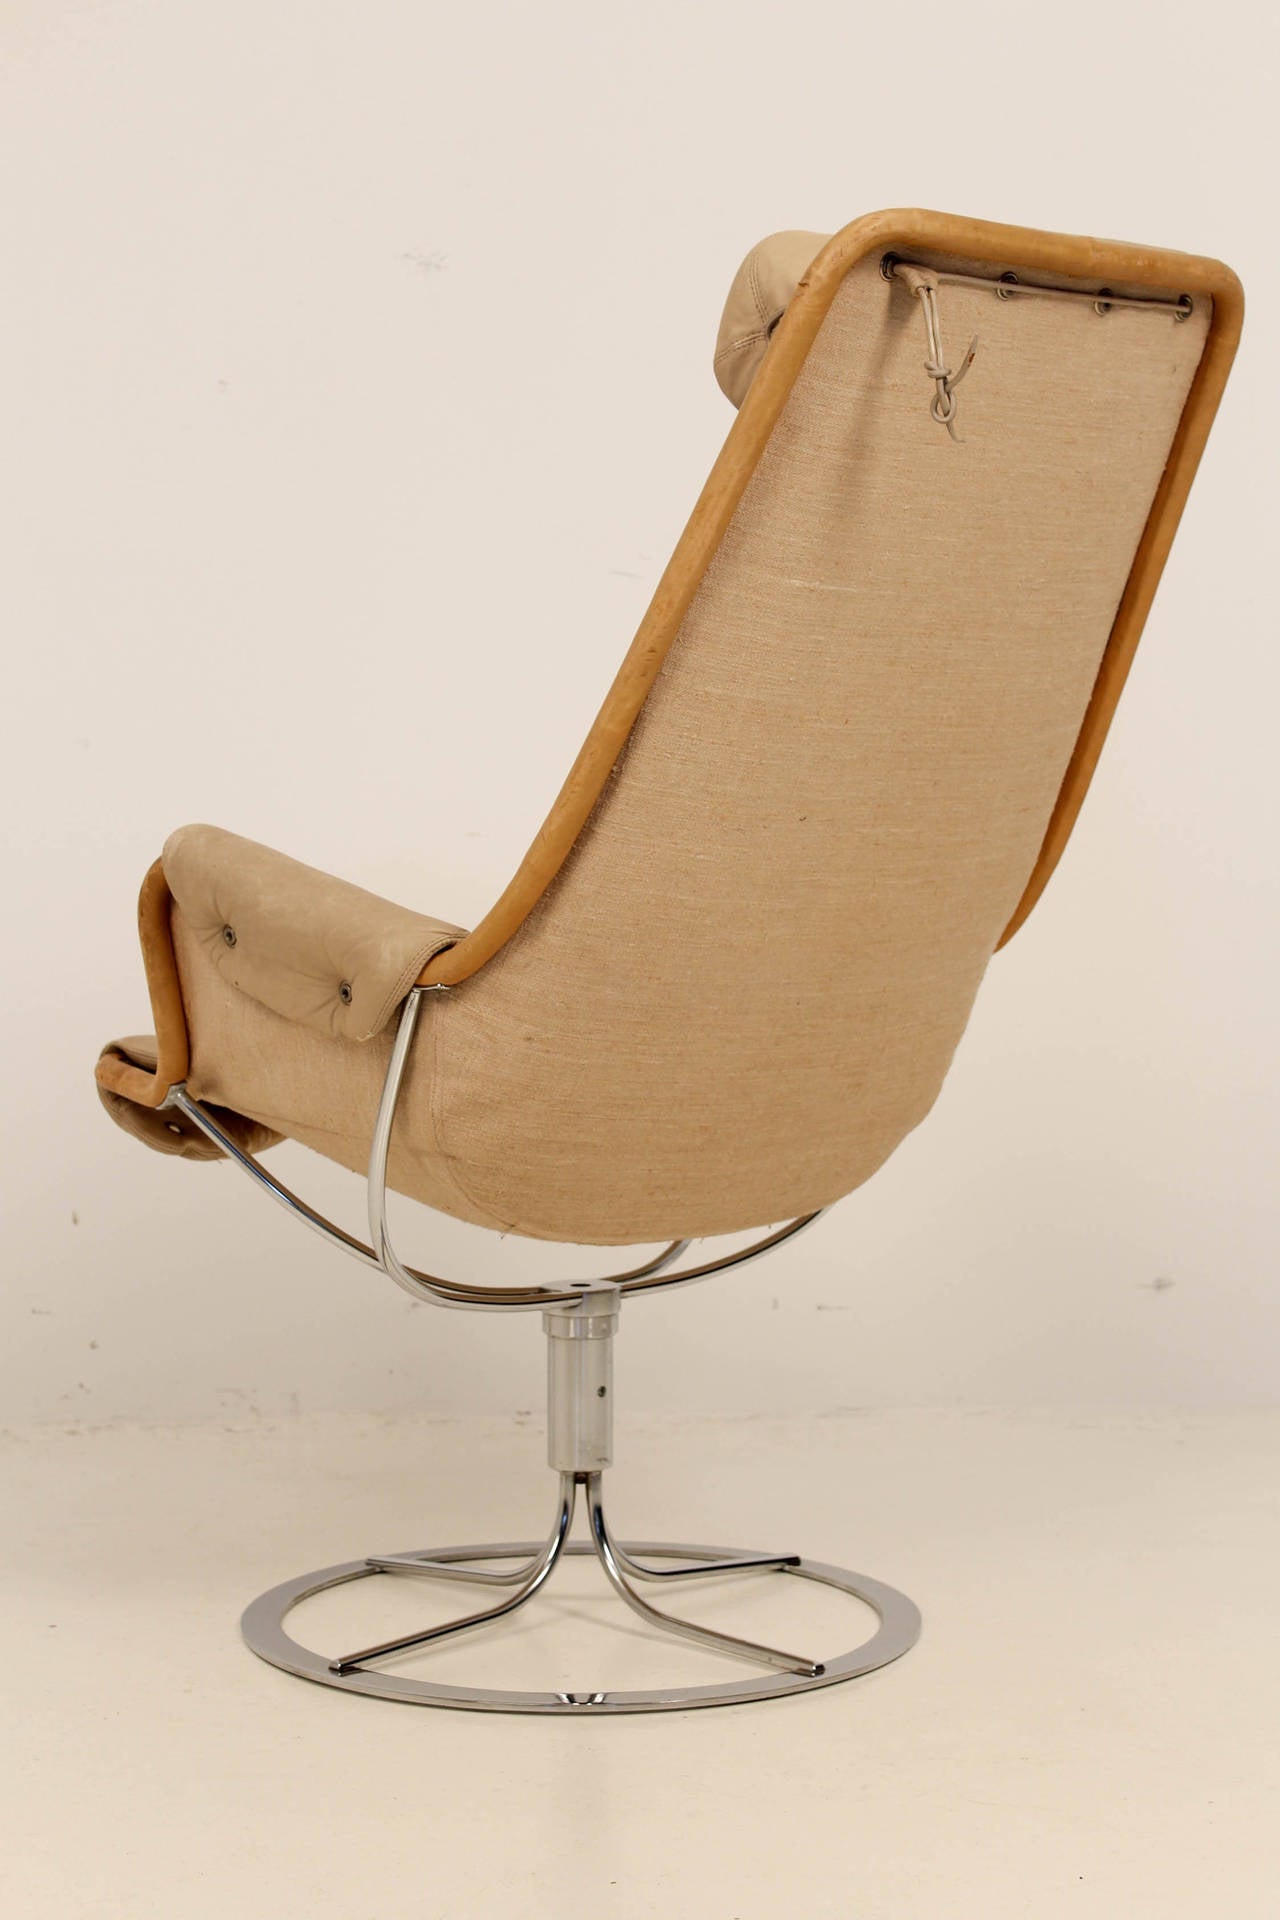 duxiana jetson chair by bruno mathsson